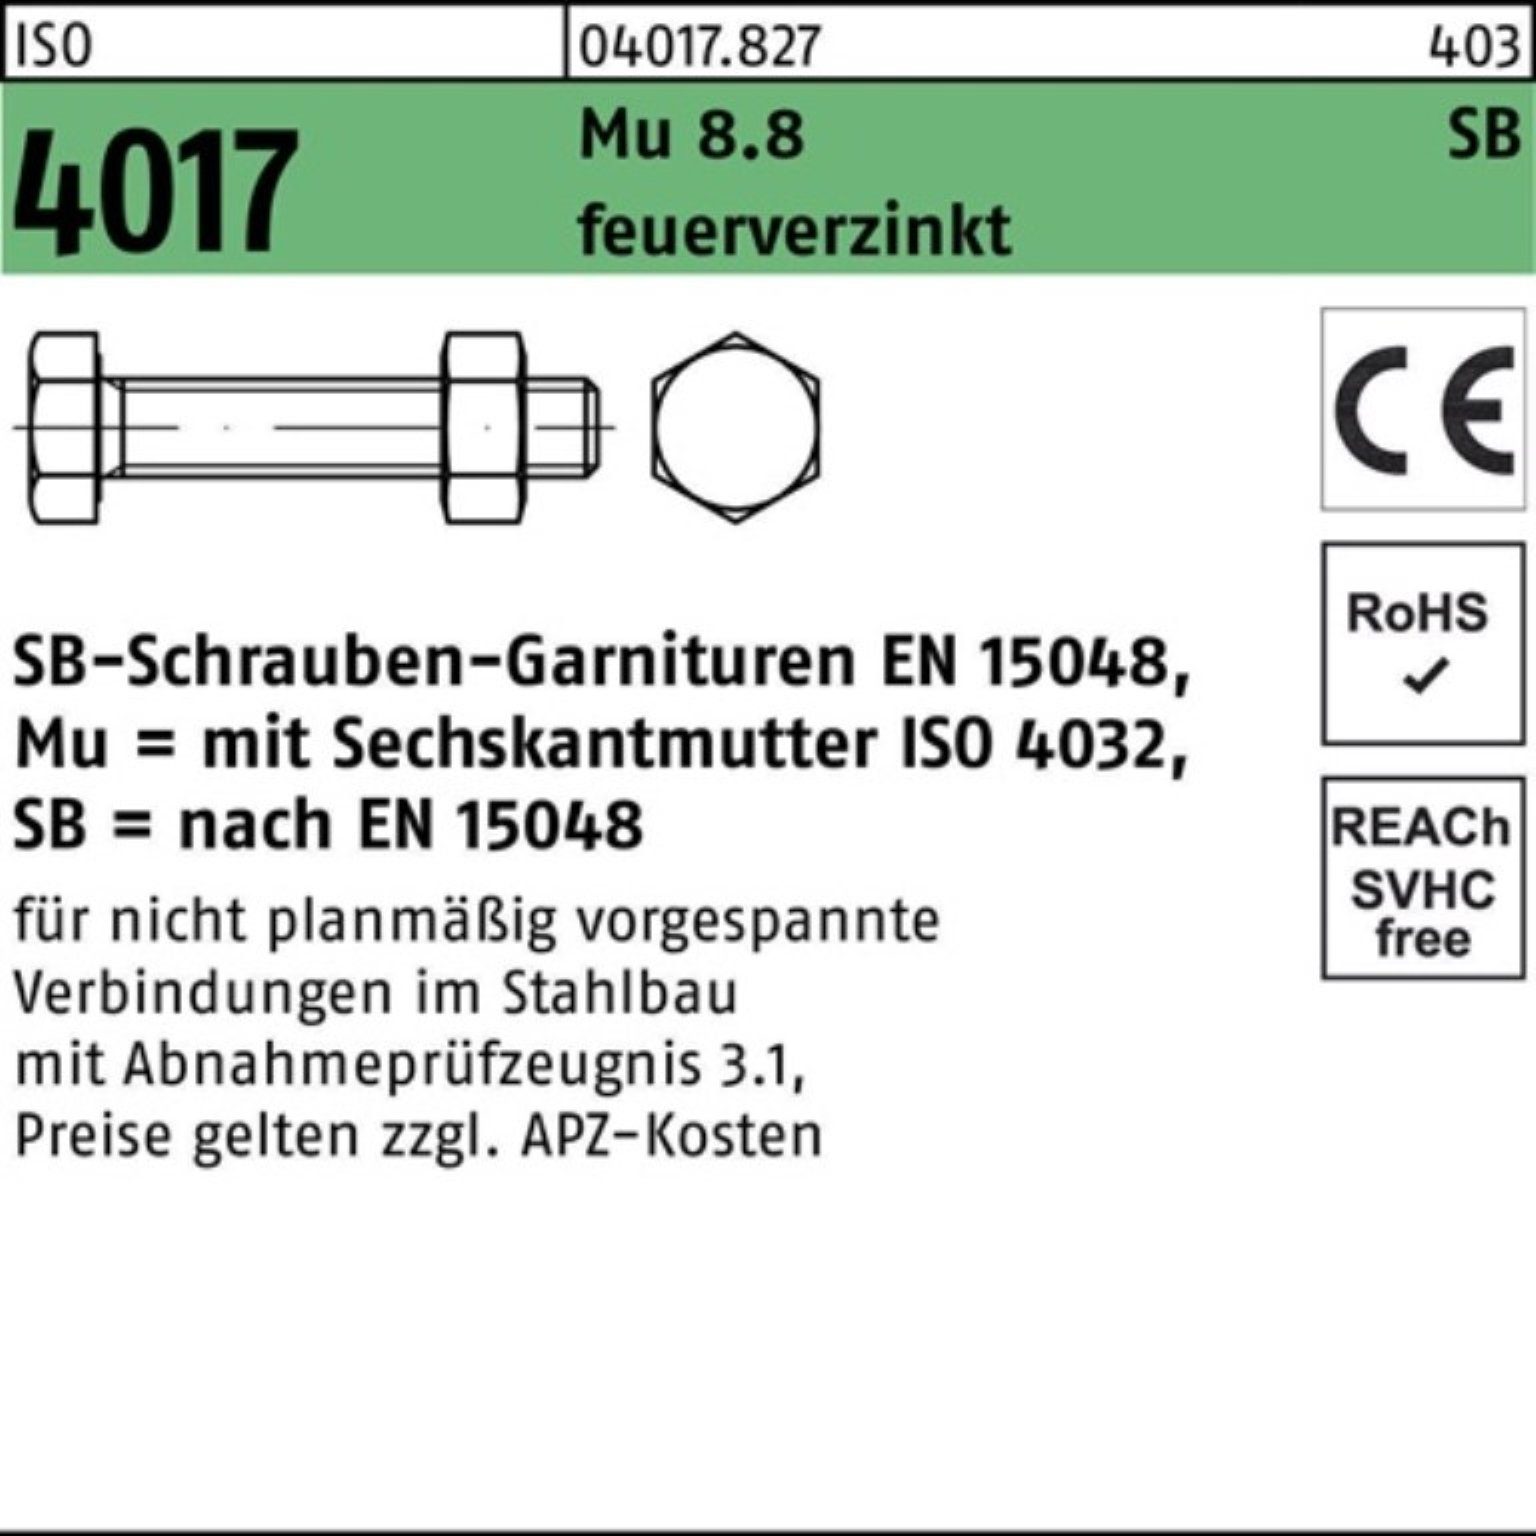 Sechskantschraube VG 4017 100er feuerverz. 55 Bufab M10x Mutter ISO 8.8 Pack Sechskantschraube